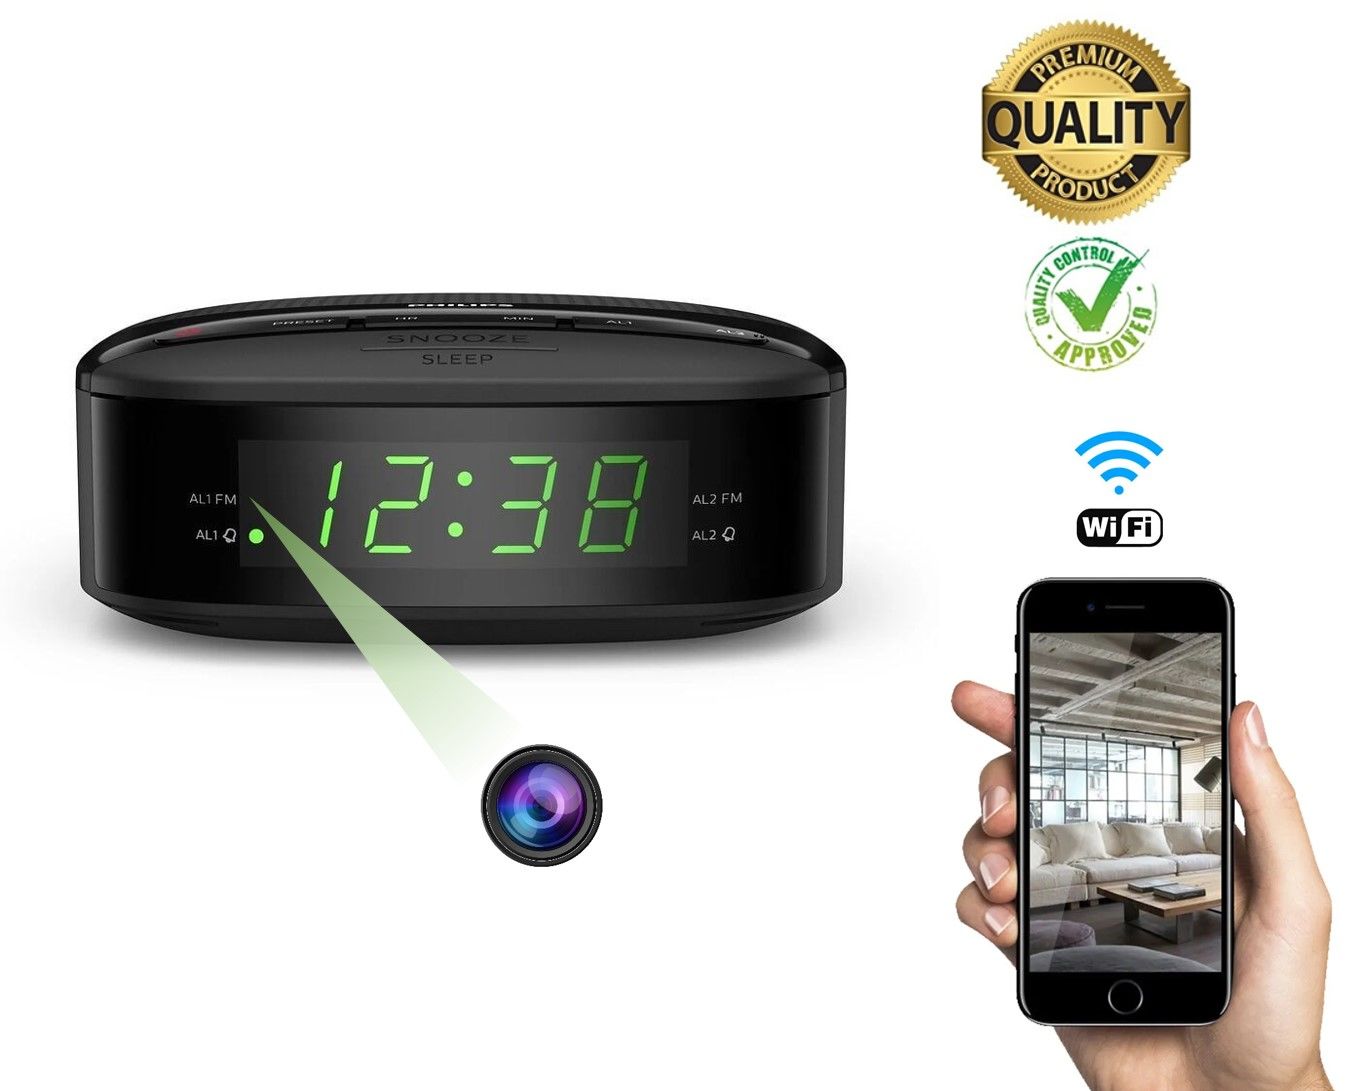 Masa Saati Wifi Gizli Video Kamera Hareket Sensörlü Ses Video Kayıt 32gb Uzaktan Canlı İzleme Dinleme Cihazı